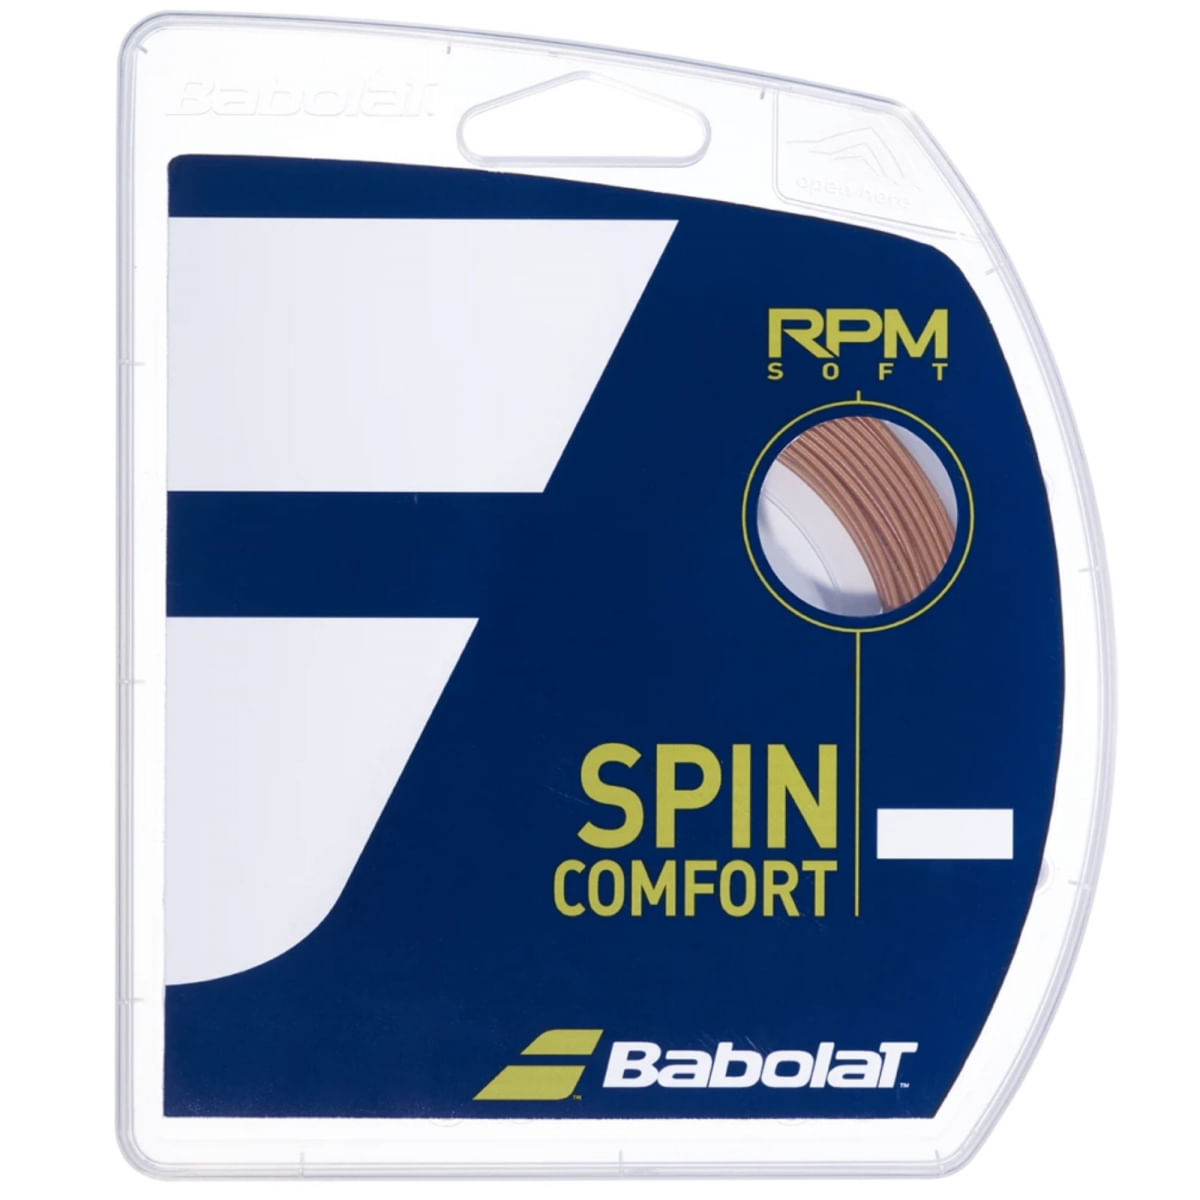 Corda de Tenis Babolat RPM SOFT 1.25MM SET Individual